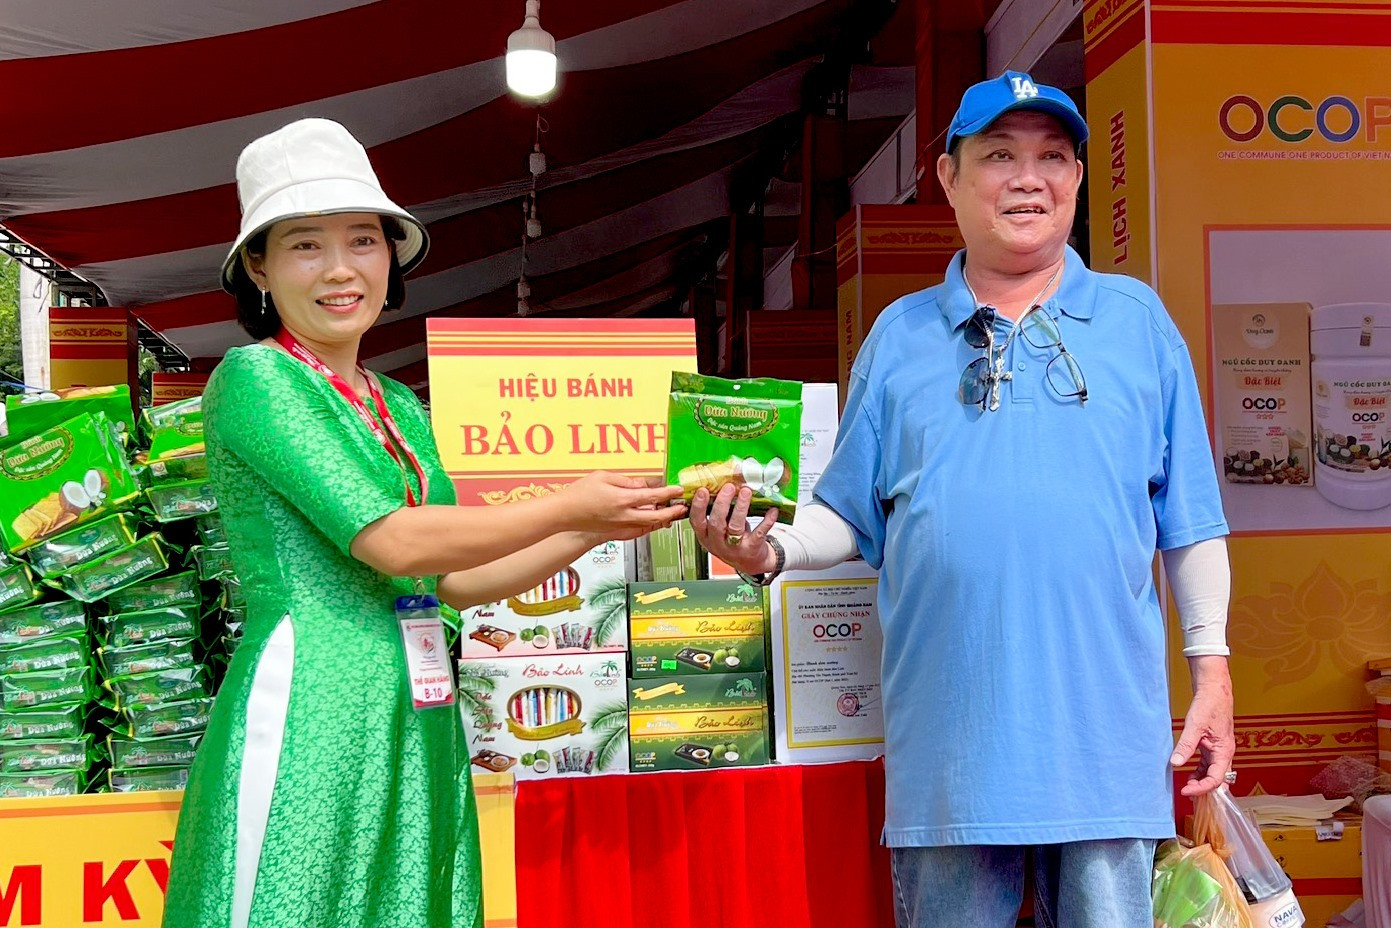 Bánh dừa Bảo Linh bán hết 1.000 sản phẩm trong sự kiện Những ngày văn hóa đồng hương Quảng Nam tại TP.Hồ Chí Minh. Ảnh: P.VINH